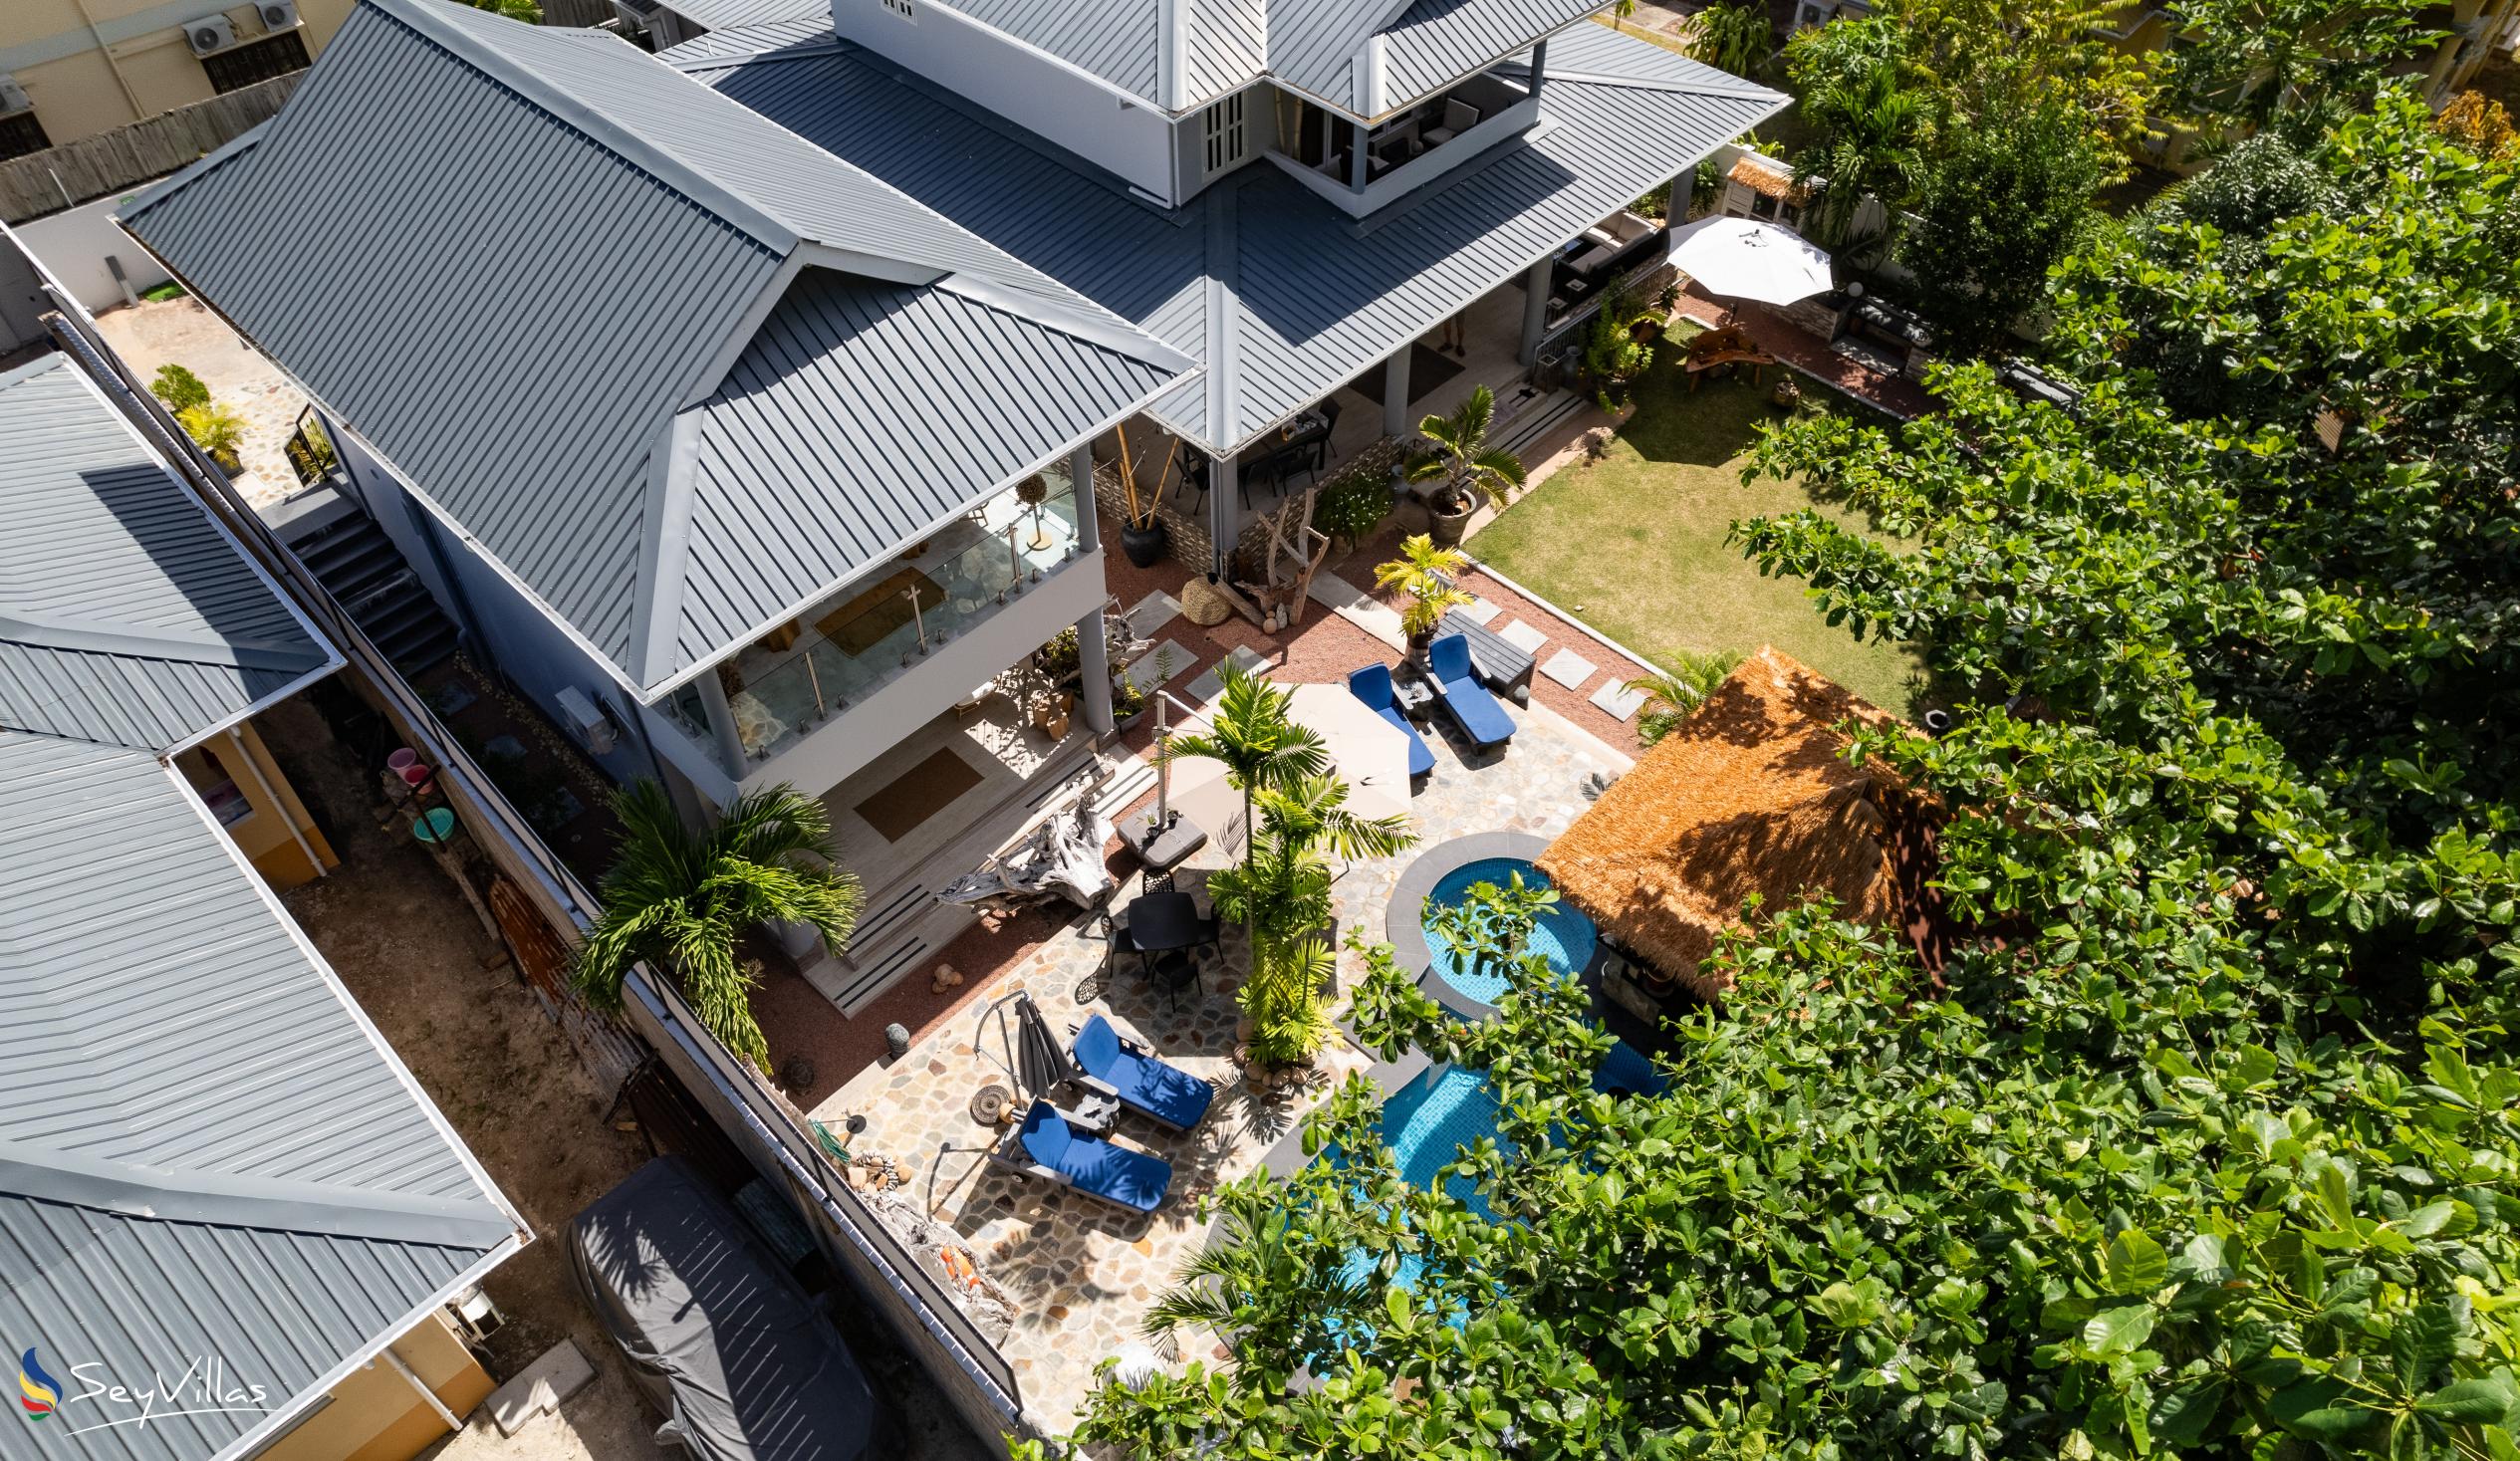 Foto 16: Treasure Villa - Aussenbereich - Praslin (Seychellen)